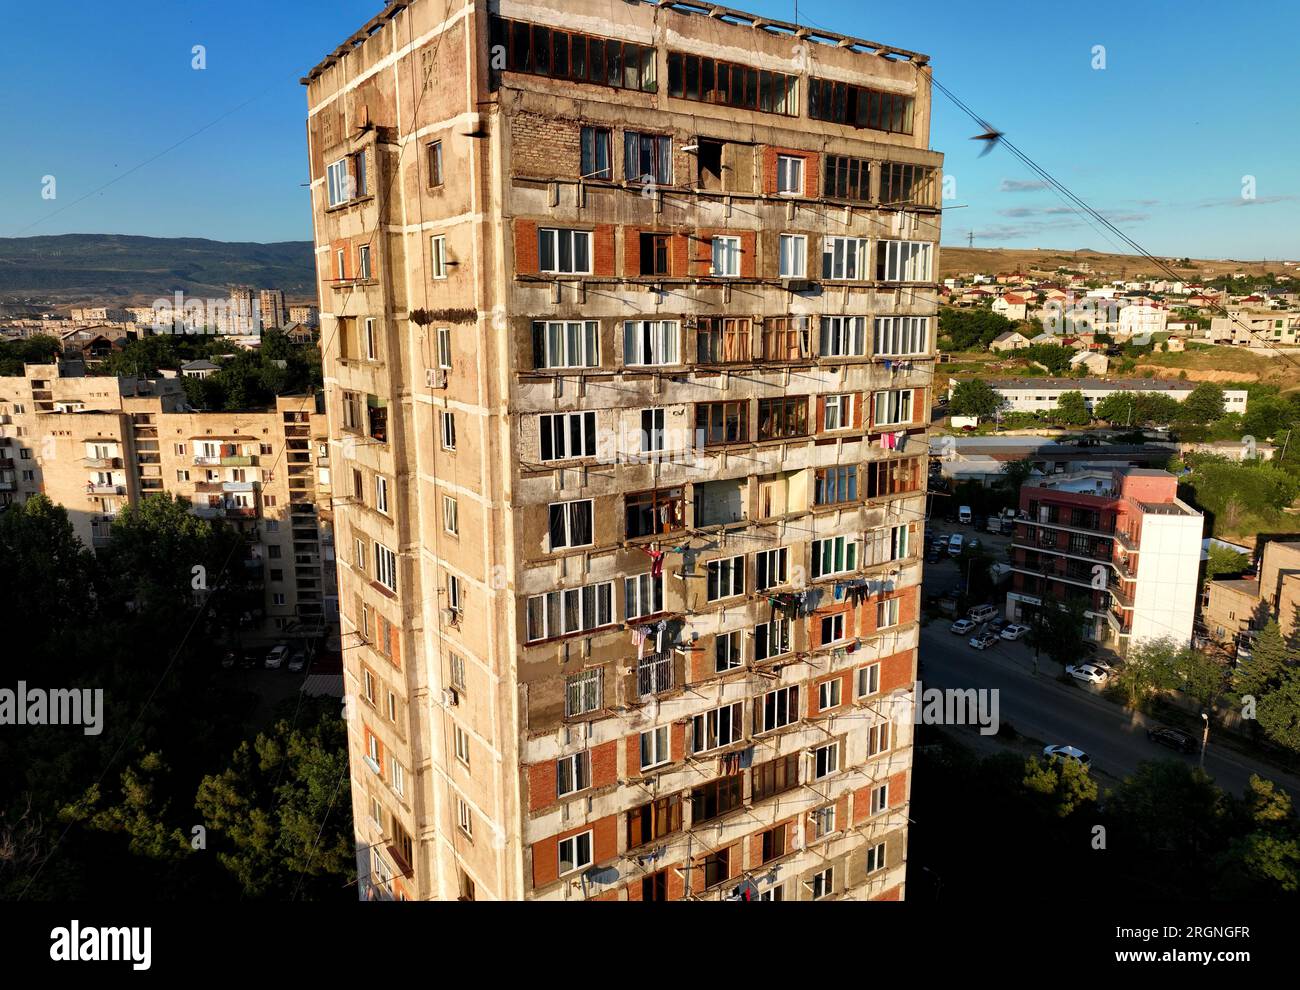 Vecchi edifici residenziali fatiscenti dell'epoca sovietica, chiamati Khrushchevkas, dal nome del leader sovietico Nikita Khrushchev a Tbilisi, Georgia. Foto Stock